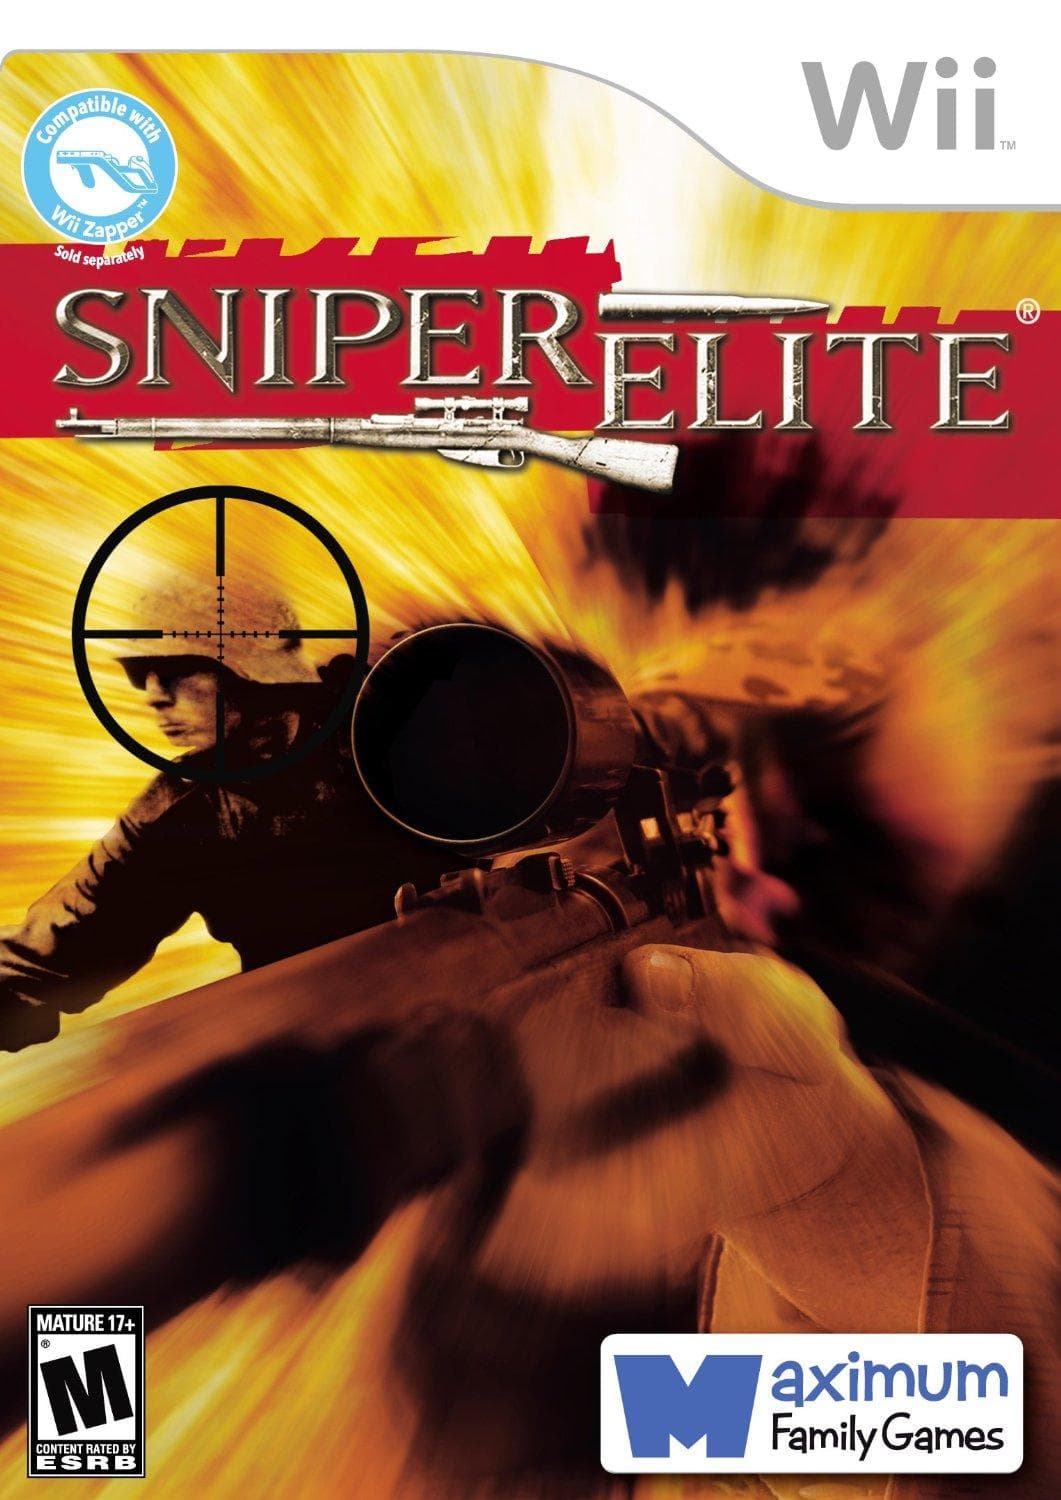 Sniper Elite for ps2 